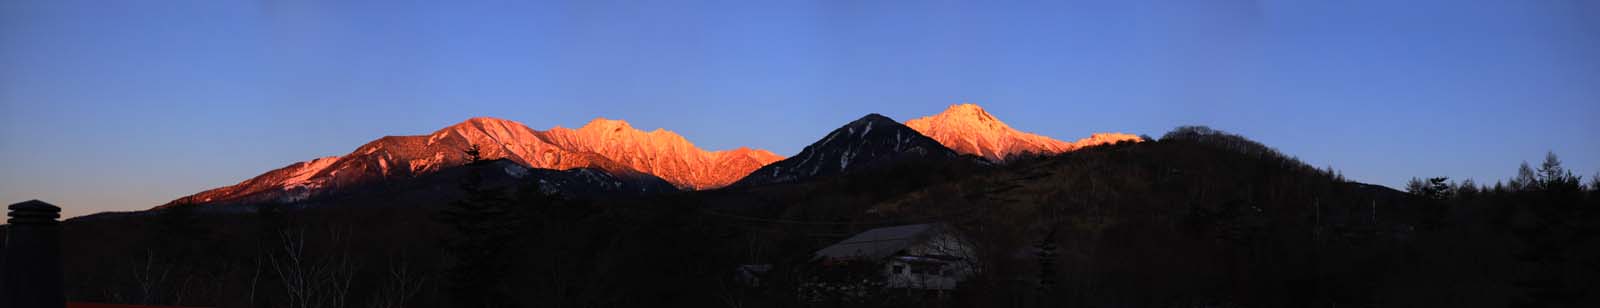 fotografia, materiale, libero il panorama, dipinga, fotografia di scorta,Yatsugatake vista intera, Yatsugatake, montagna di inverno, L'aurora, La neve